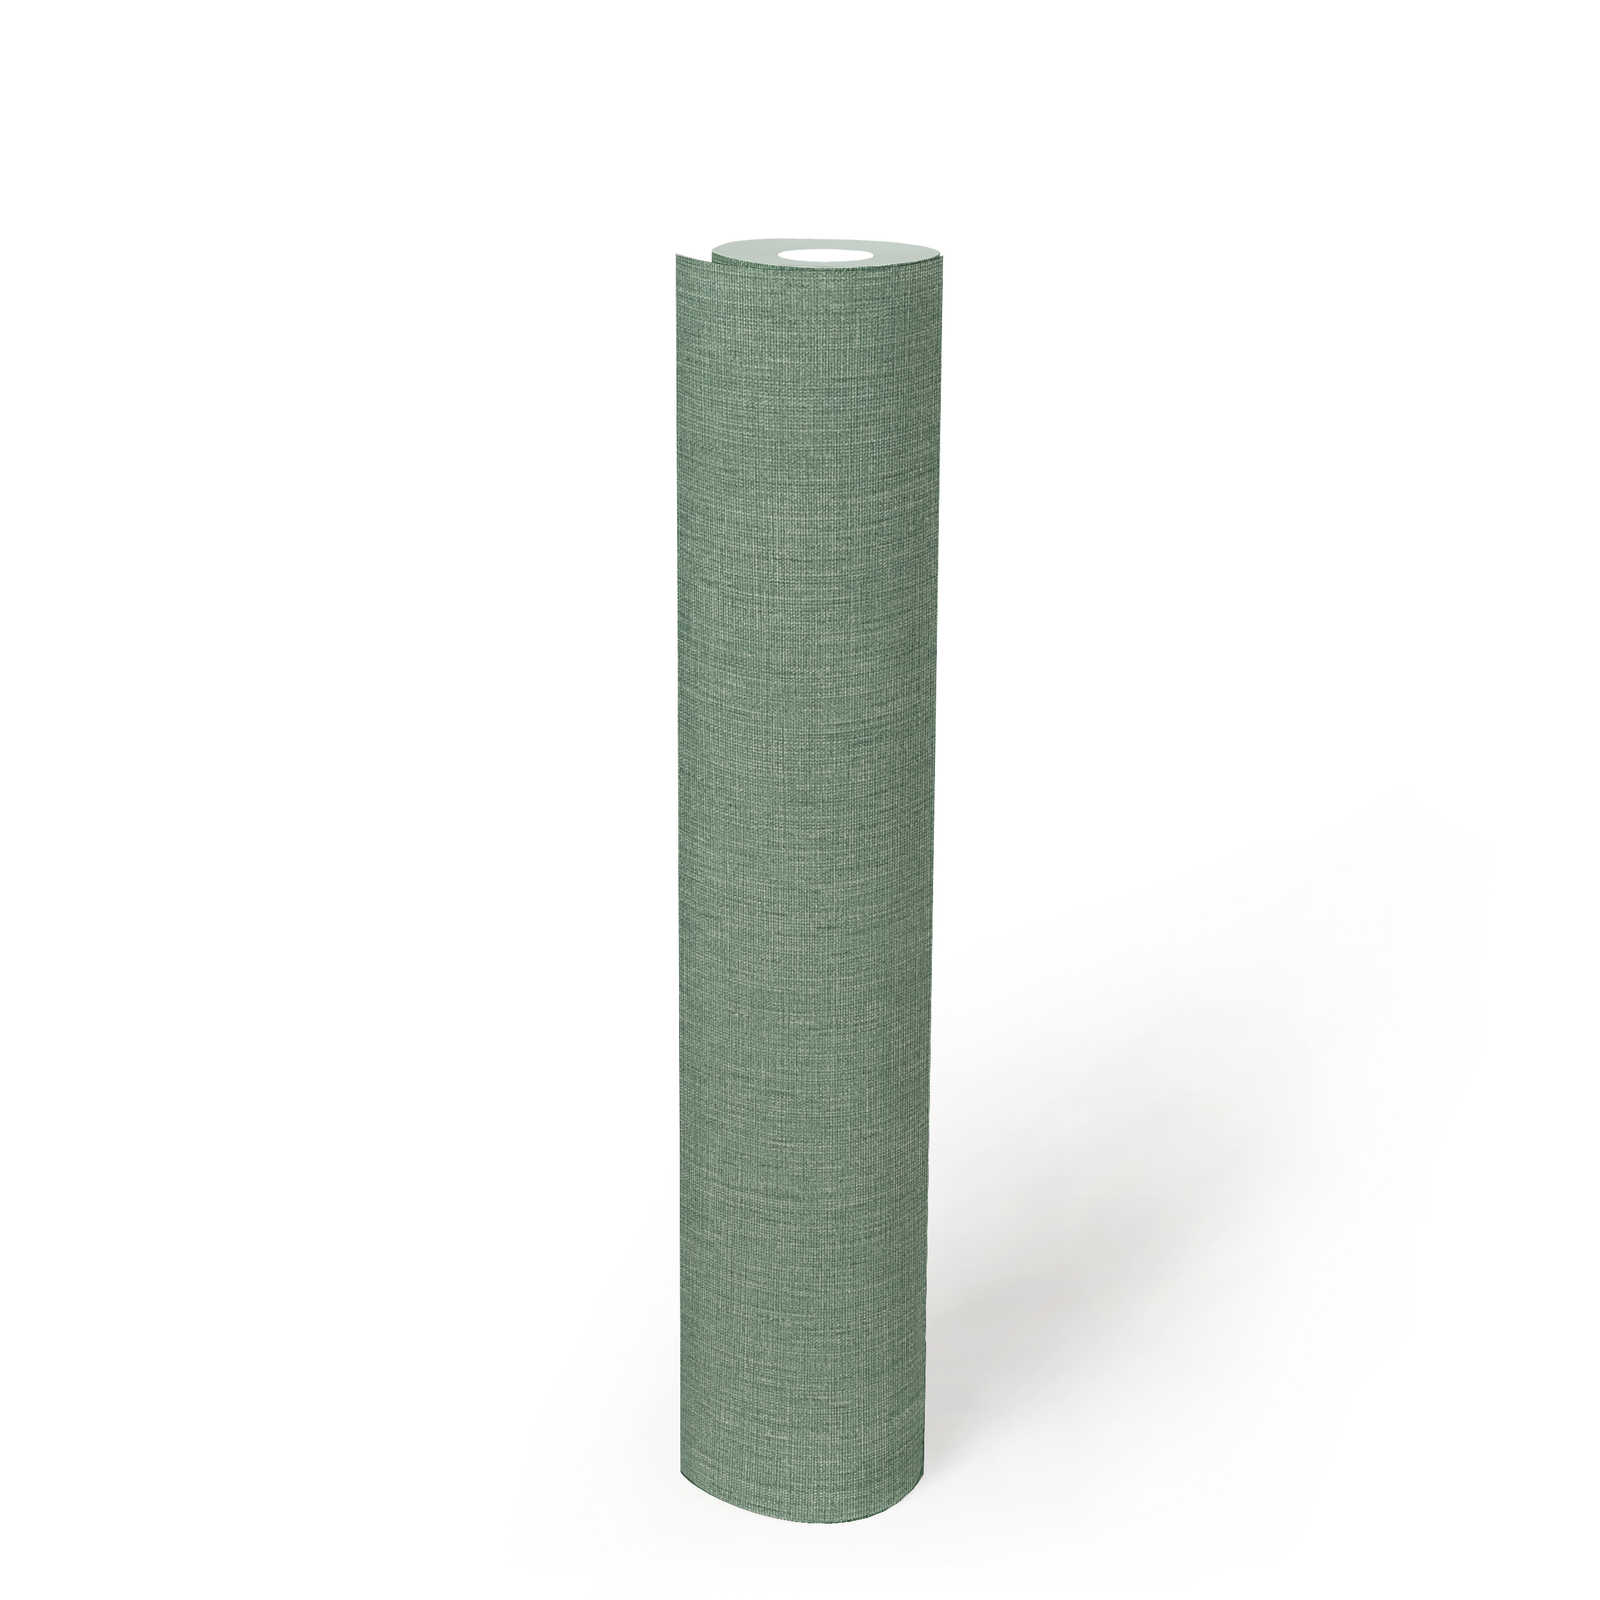             Papel pintado unitario de aspecto textil con textura - verde
        